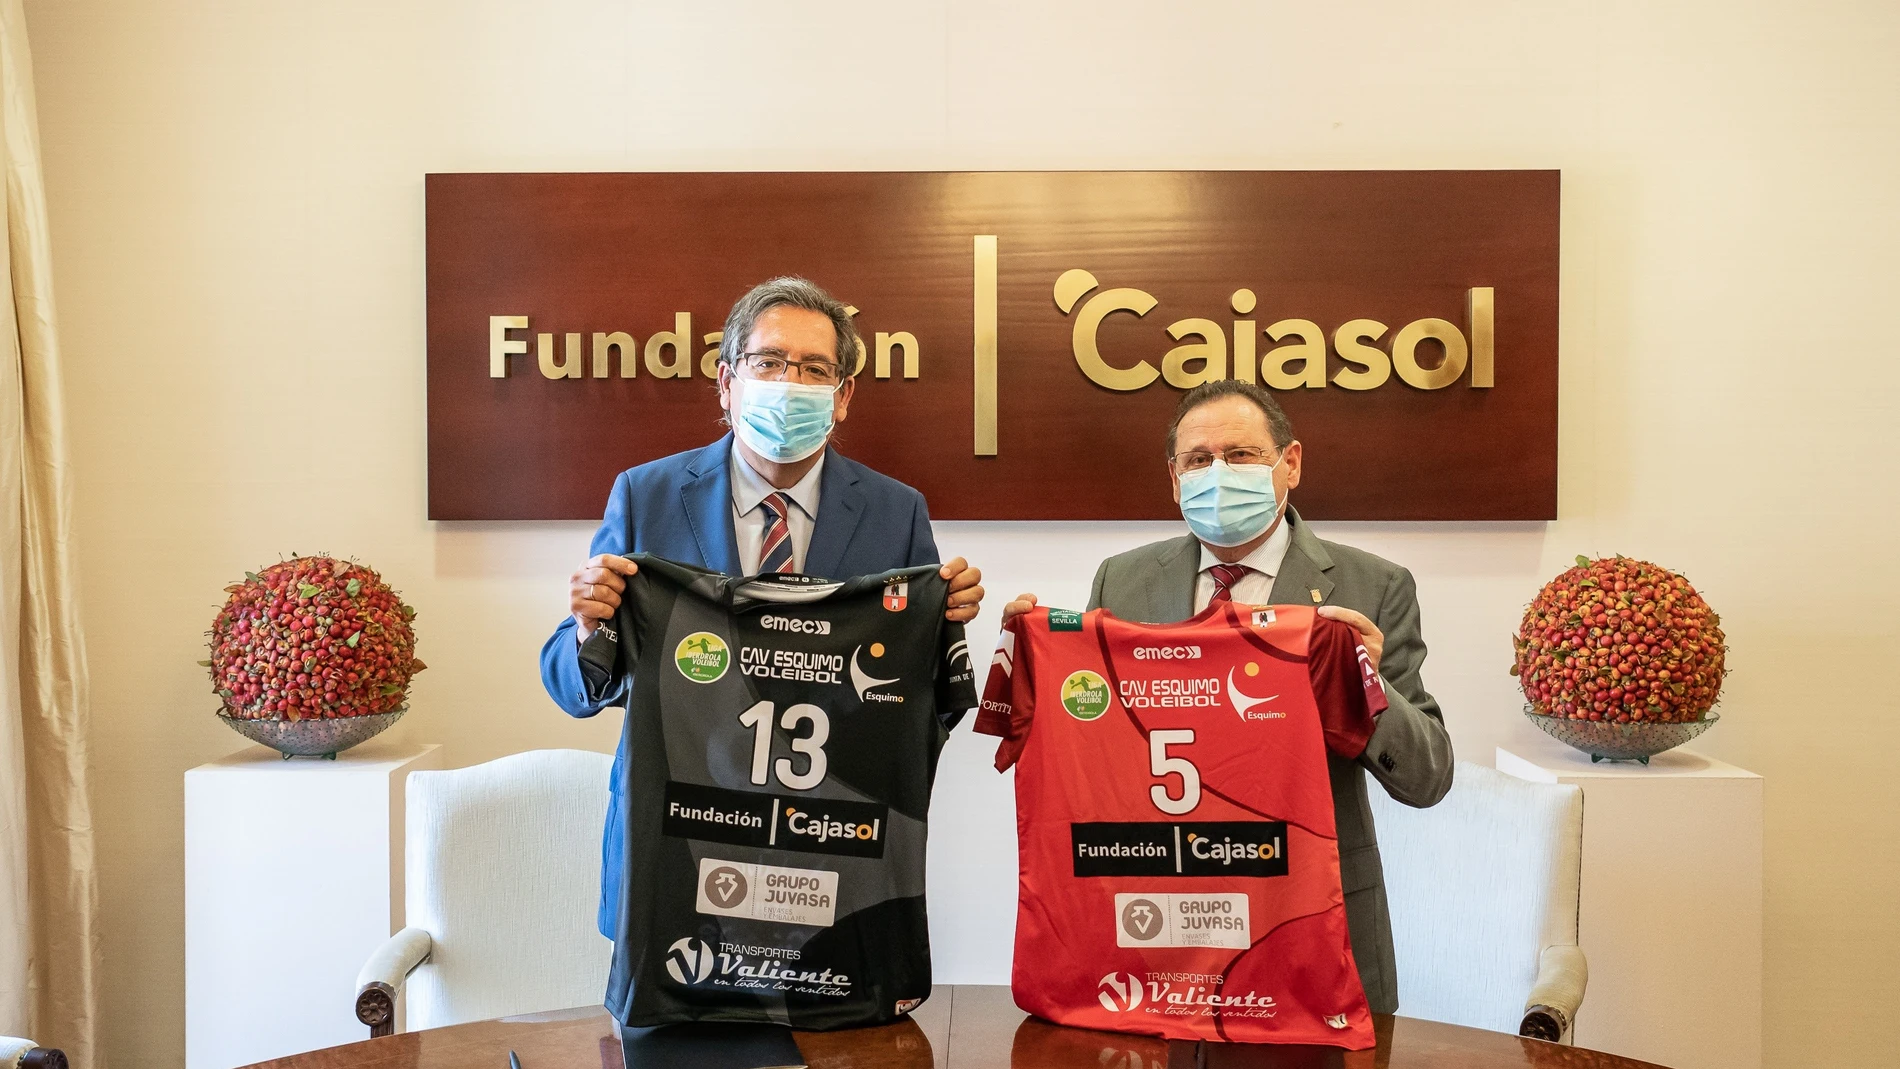 Sevilla.- Cajasol.- La Fundación Cajasol renueva su colaboración con el Club Agrupación de Voleibol Esquimo